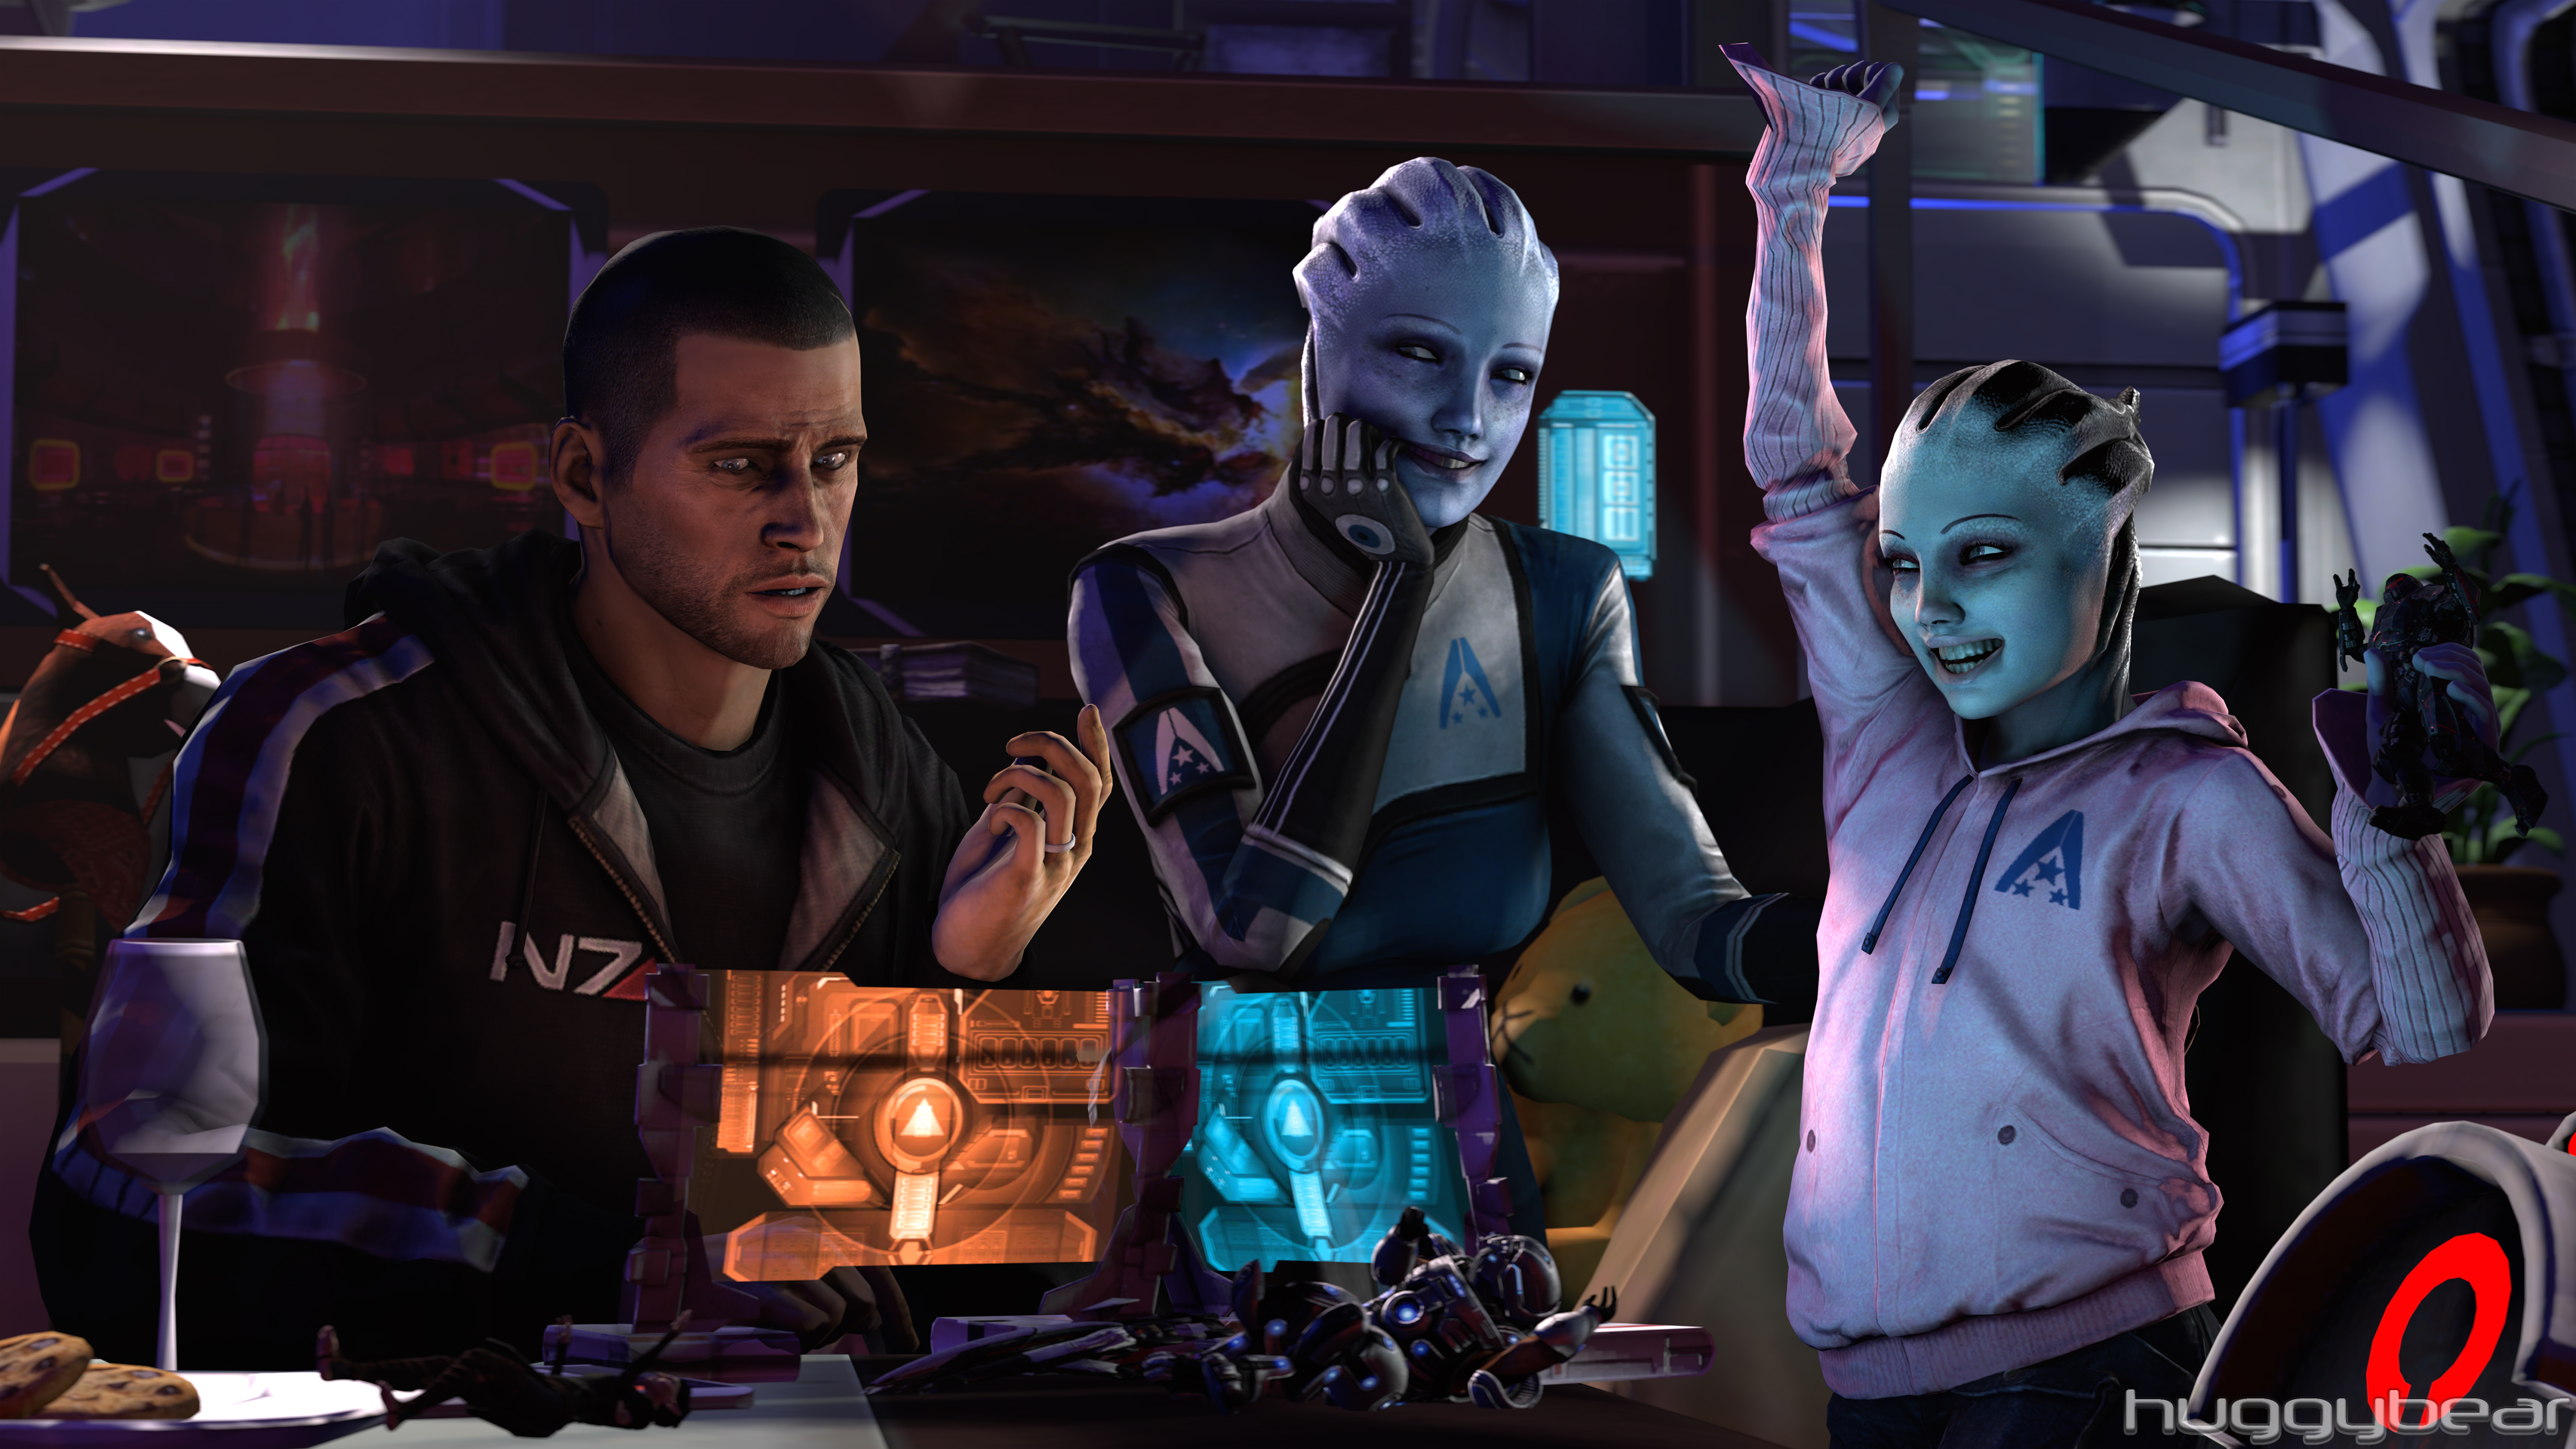 Descarga gratuita de fondo de pantalla para móvil de Mass Effect, Videojuego, Comandante Shepard, Liara T'soni.